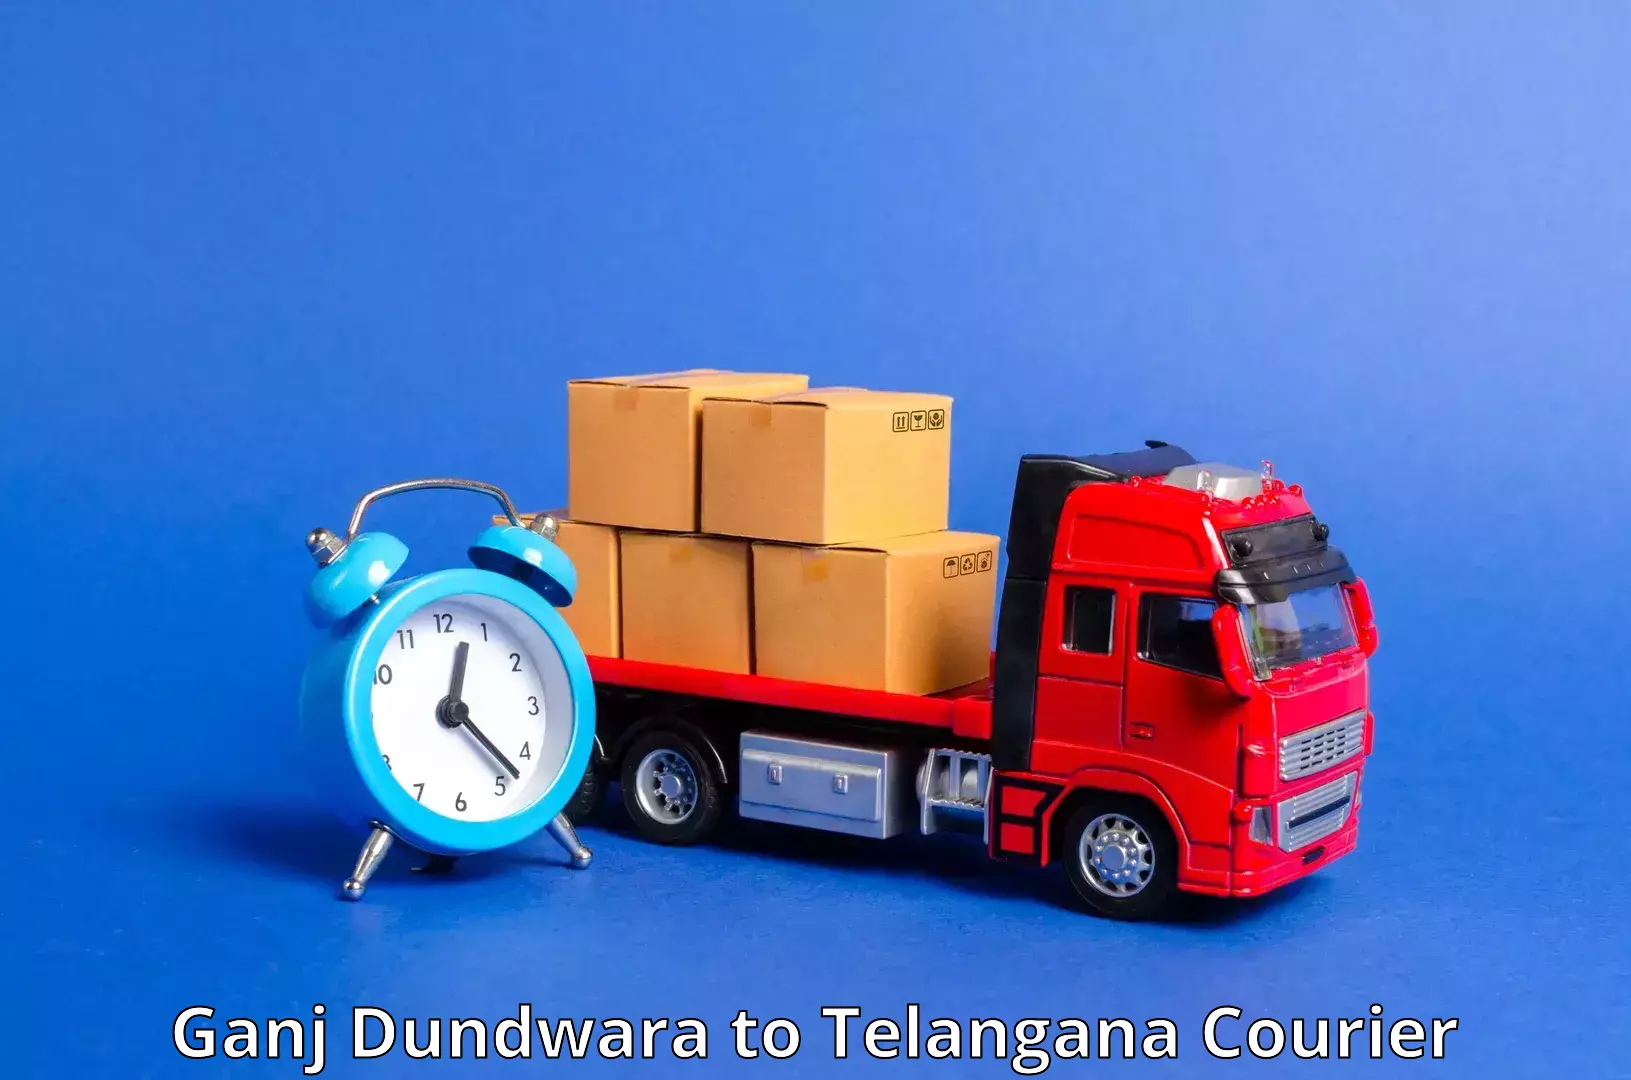 Tracking updates Ganj Dundwara to Madnoor